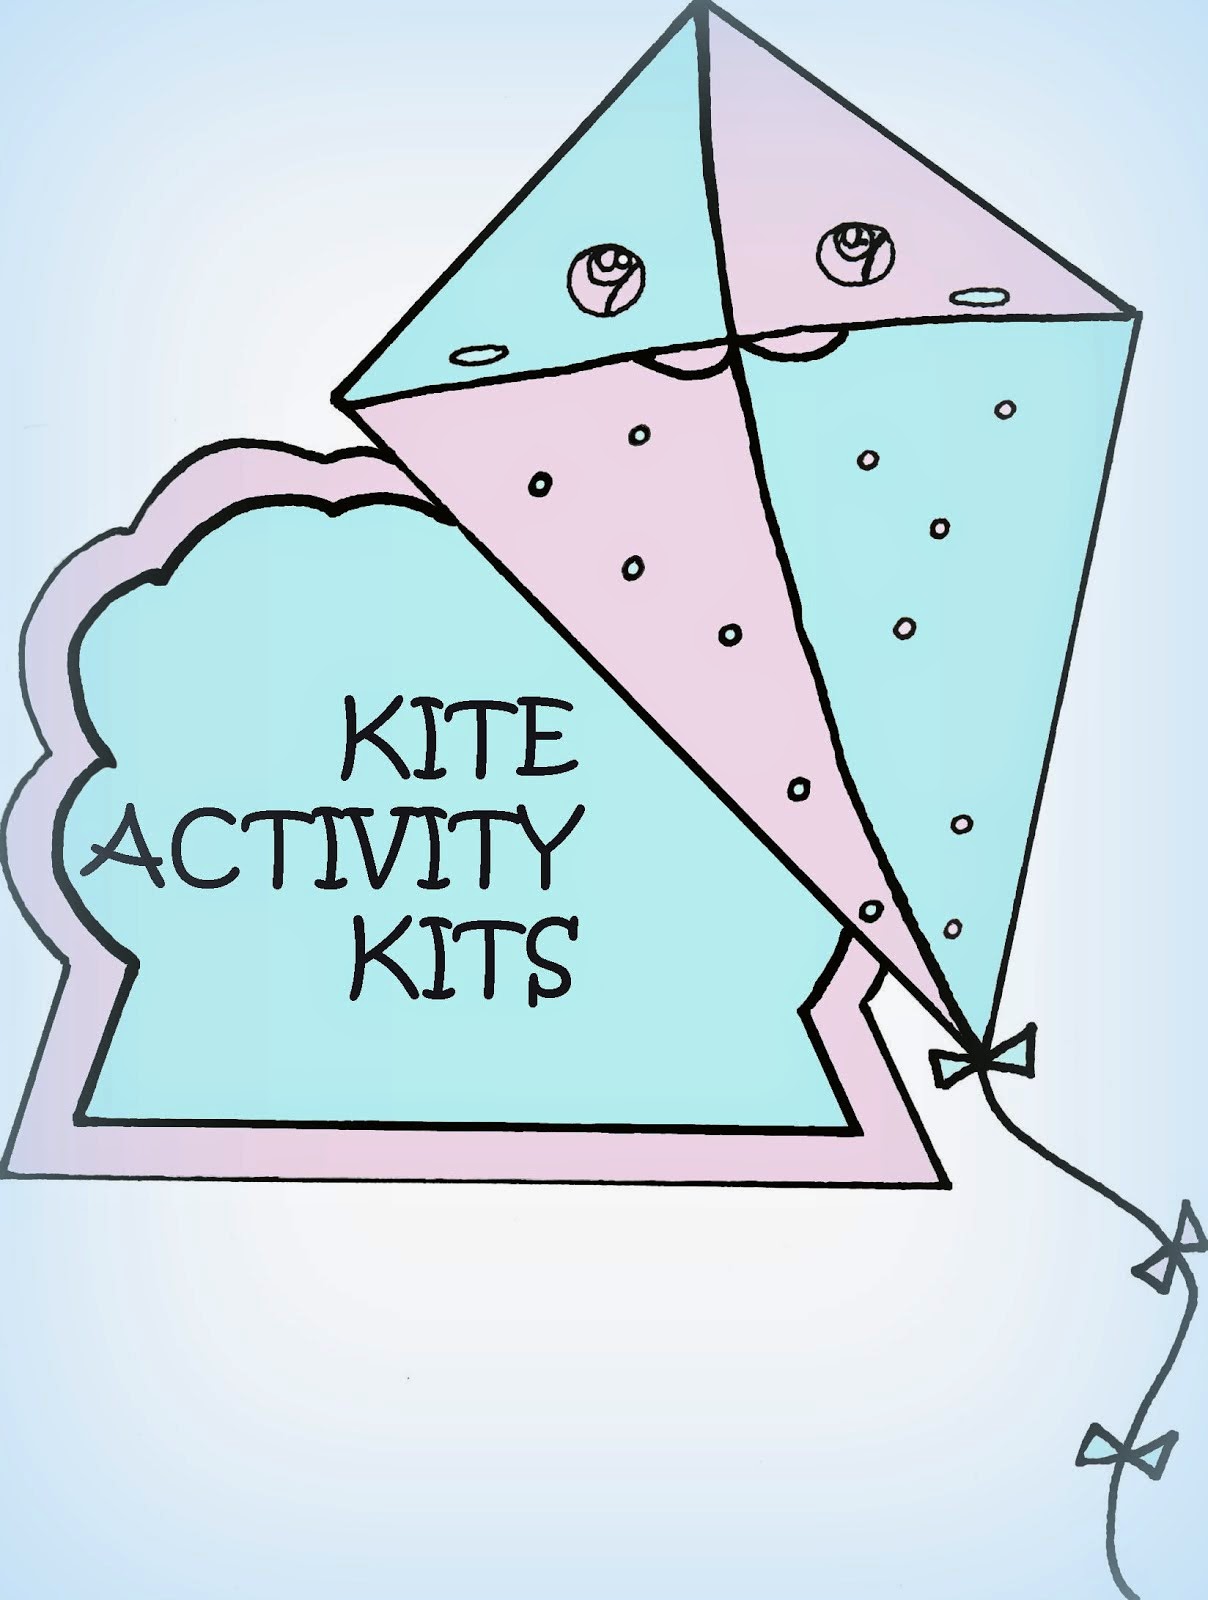 Kite Activity Kits